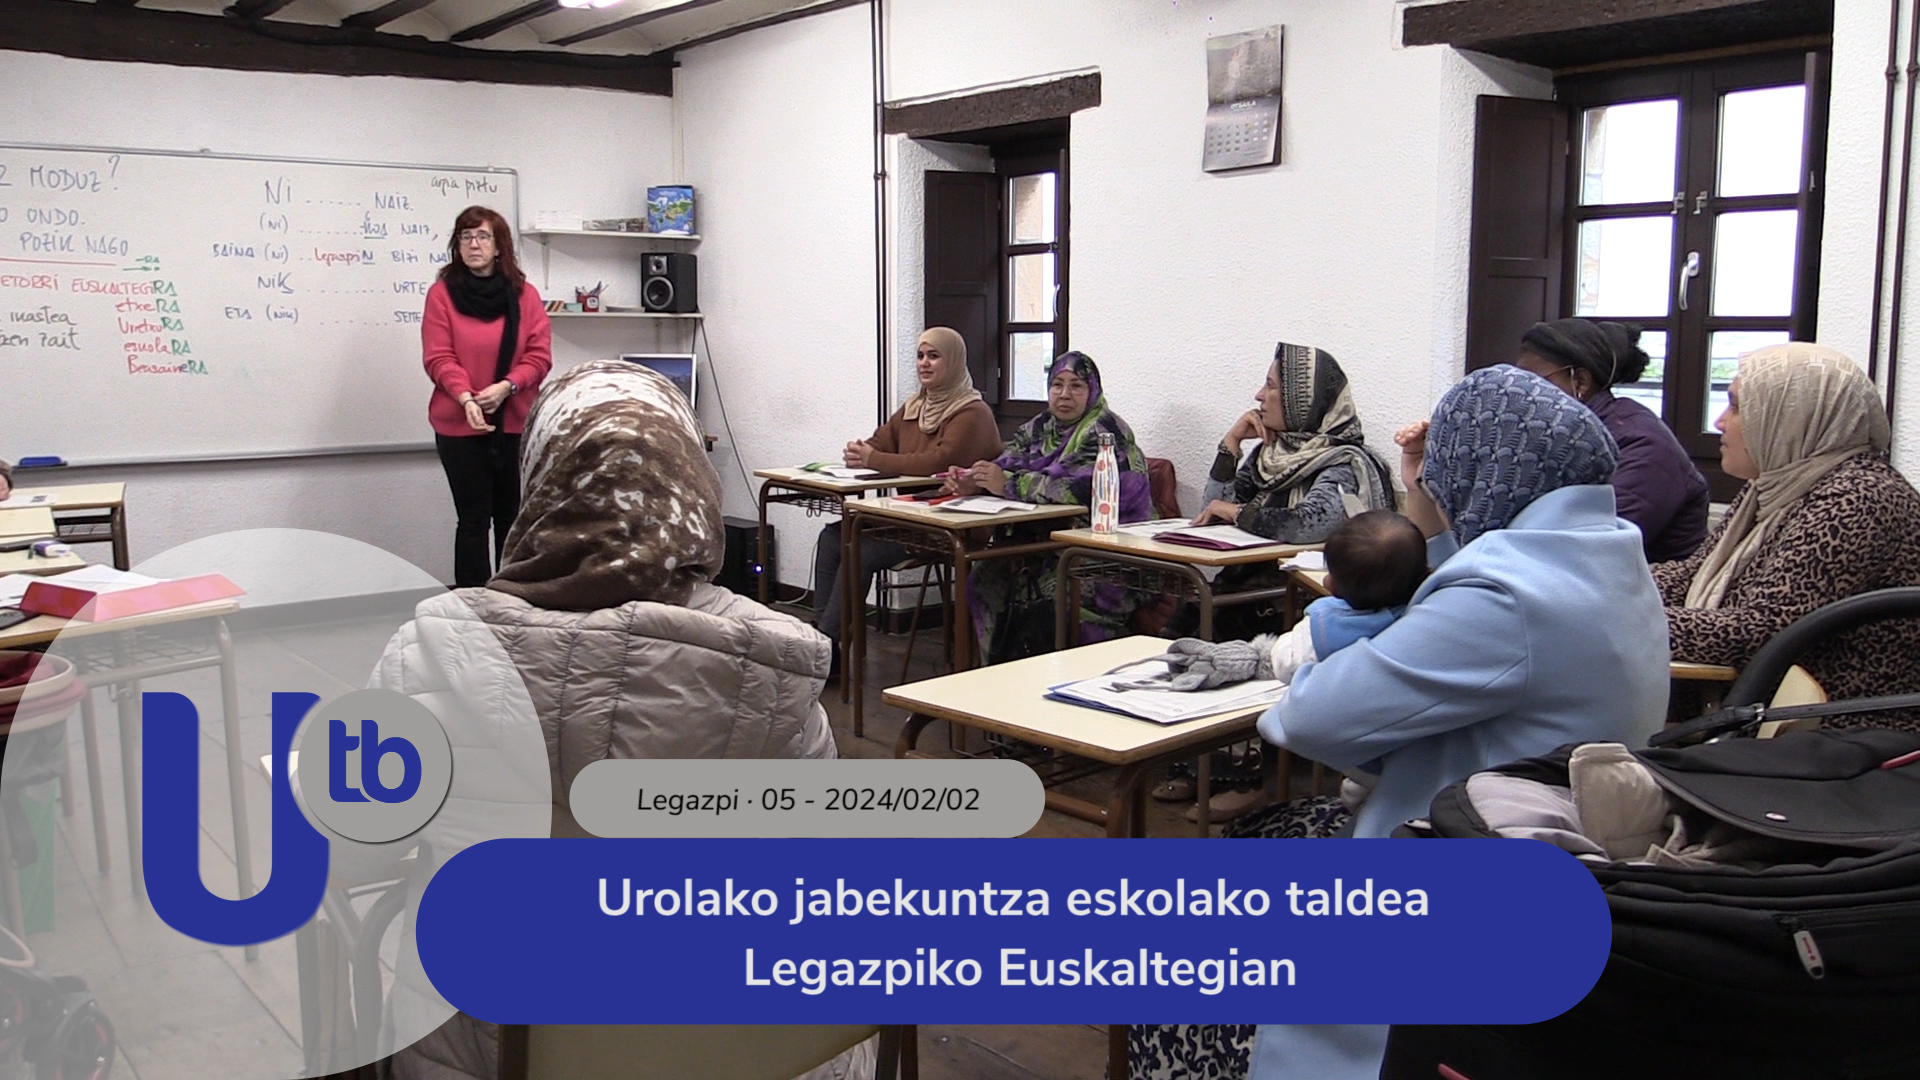 Grupo de la escuela de empoderamiento de Urola en el Euskaltegi de Legazpi / Urolako jabekuntza eskolako taldea Legazpiko Euskaltegian